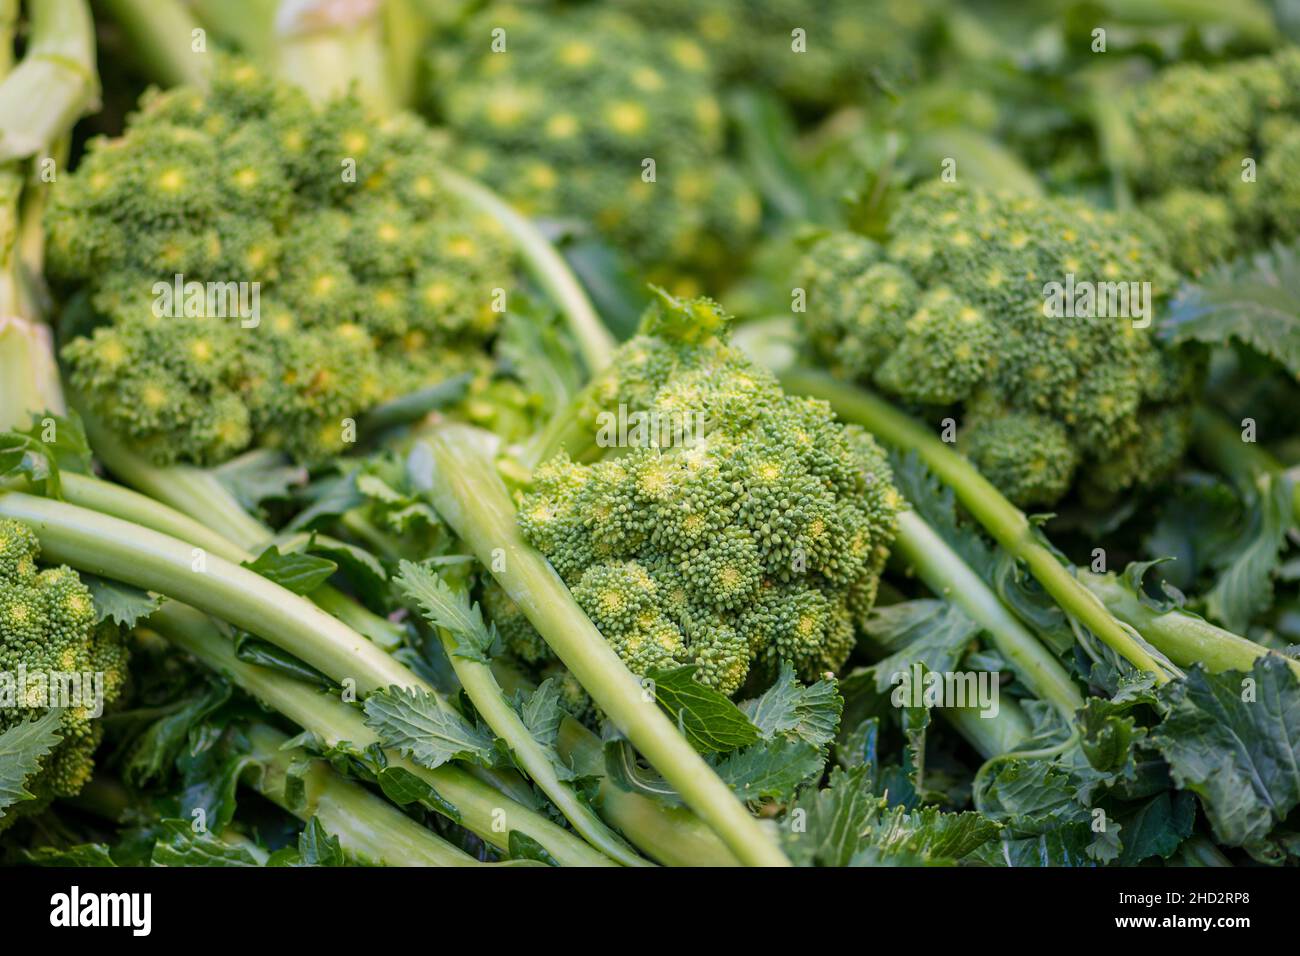 Cime di rapa, rapini o broccoli di rabbia in un mercato alimentare di strada, verdure croceferiche verdi, verdure, cucina mediterranea, Puglia, Italia Foto Stock